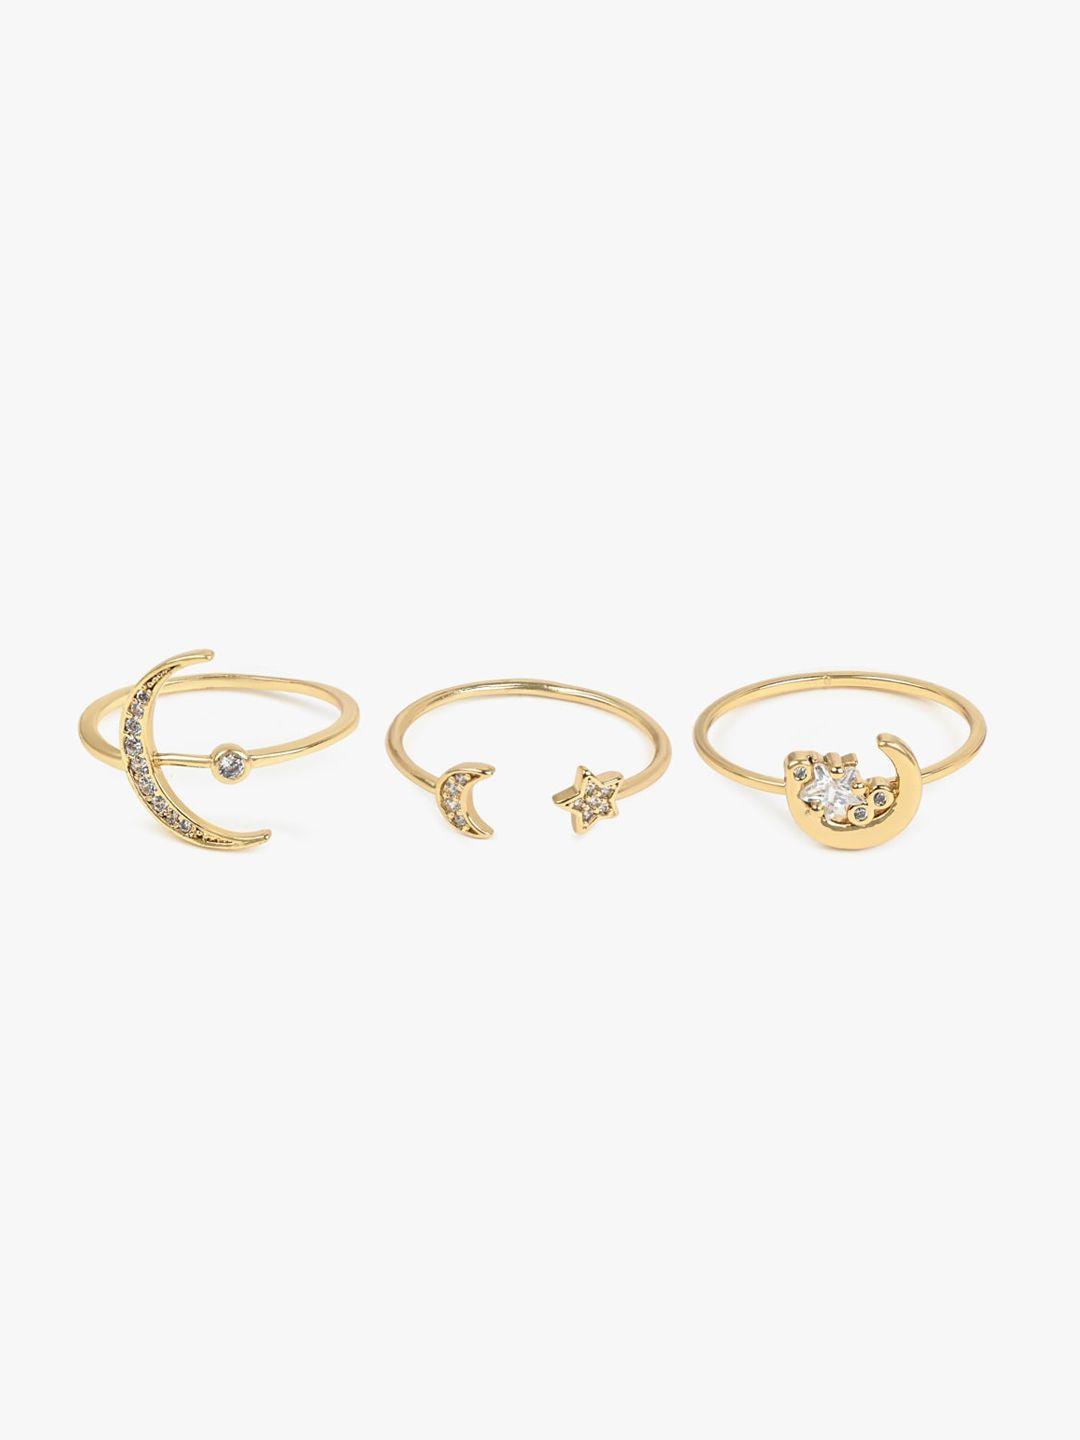 aldo set of 3 gold-plated star & moon designed stone-studded finger rings